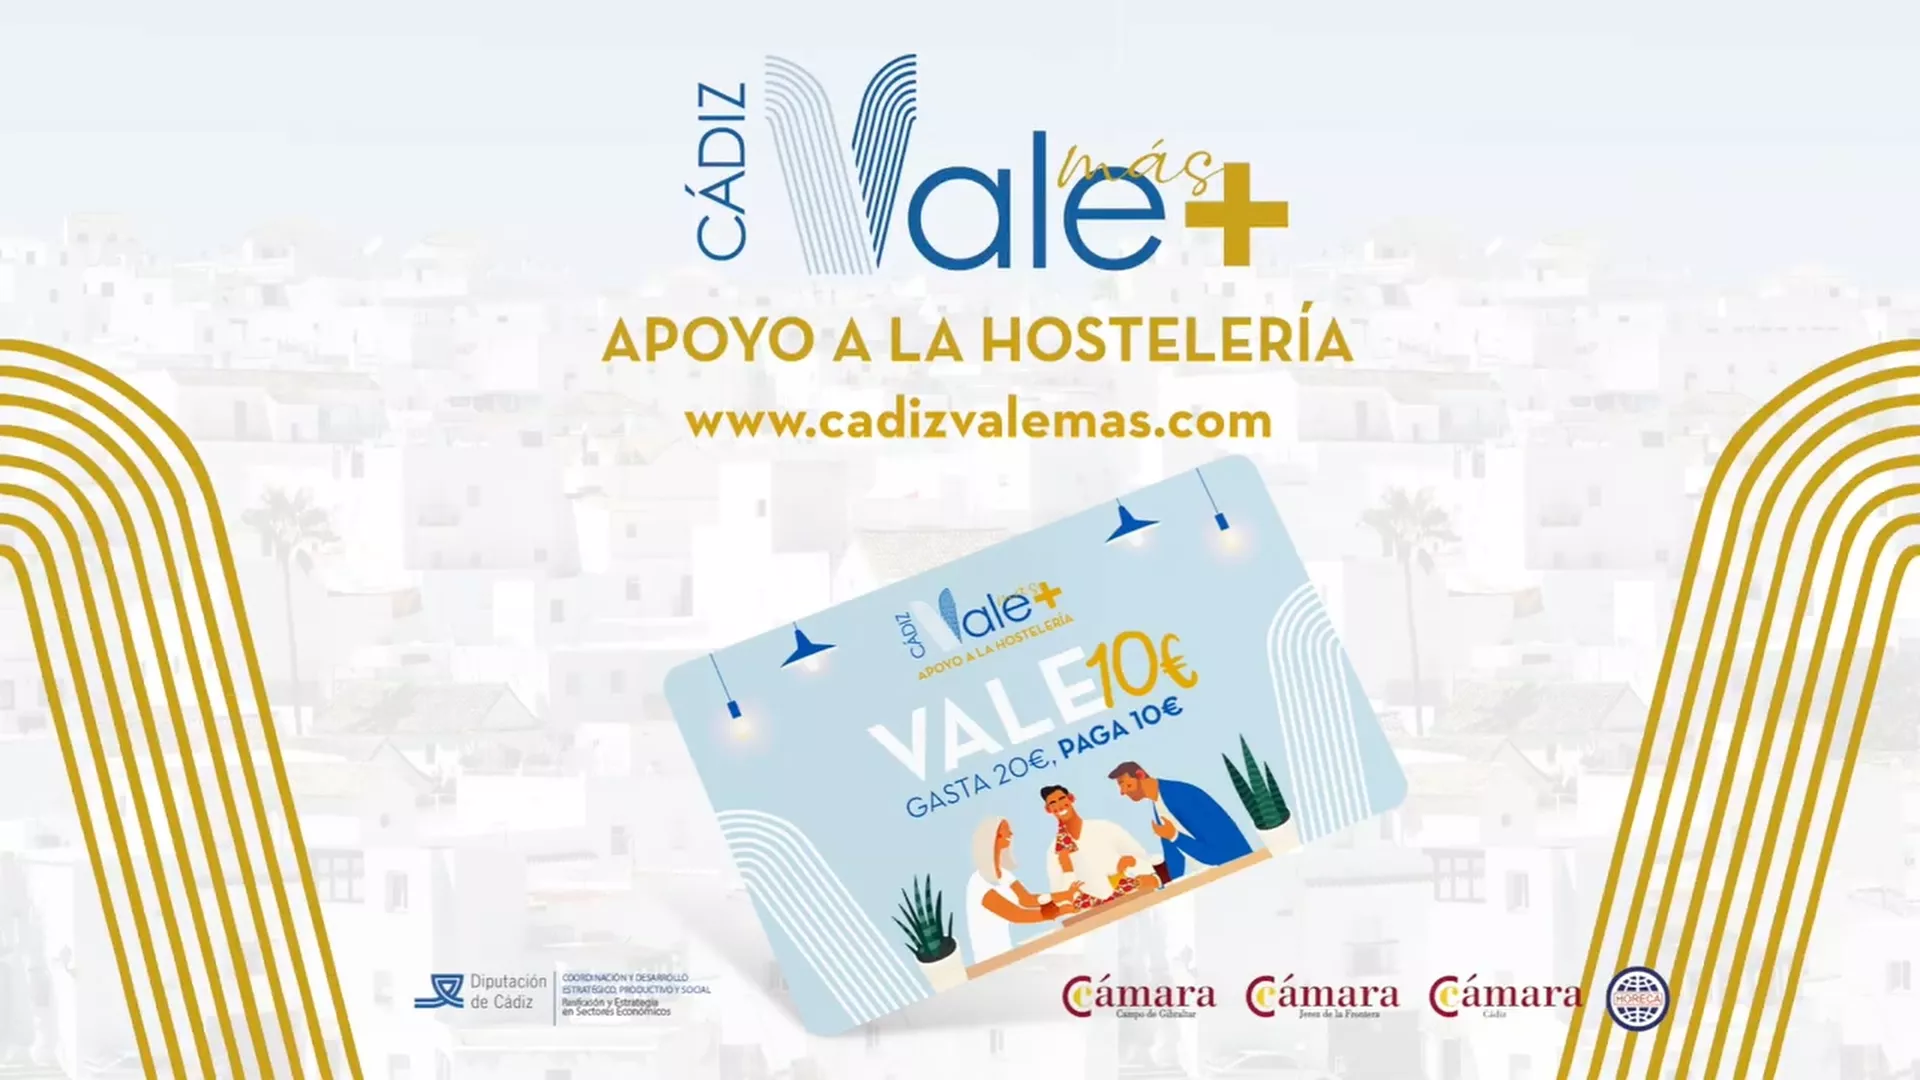 La campaña de Diputación 'Cádiz Vale Más' logra ventas de más de 3,2 millones para la hostelería de la provincia 